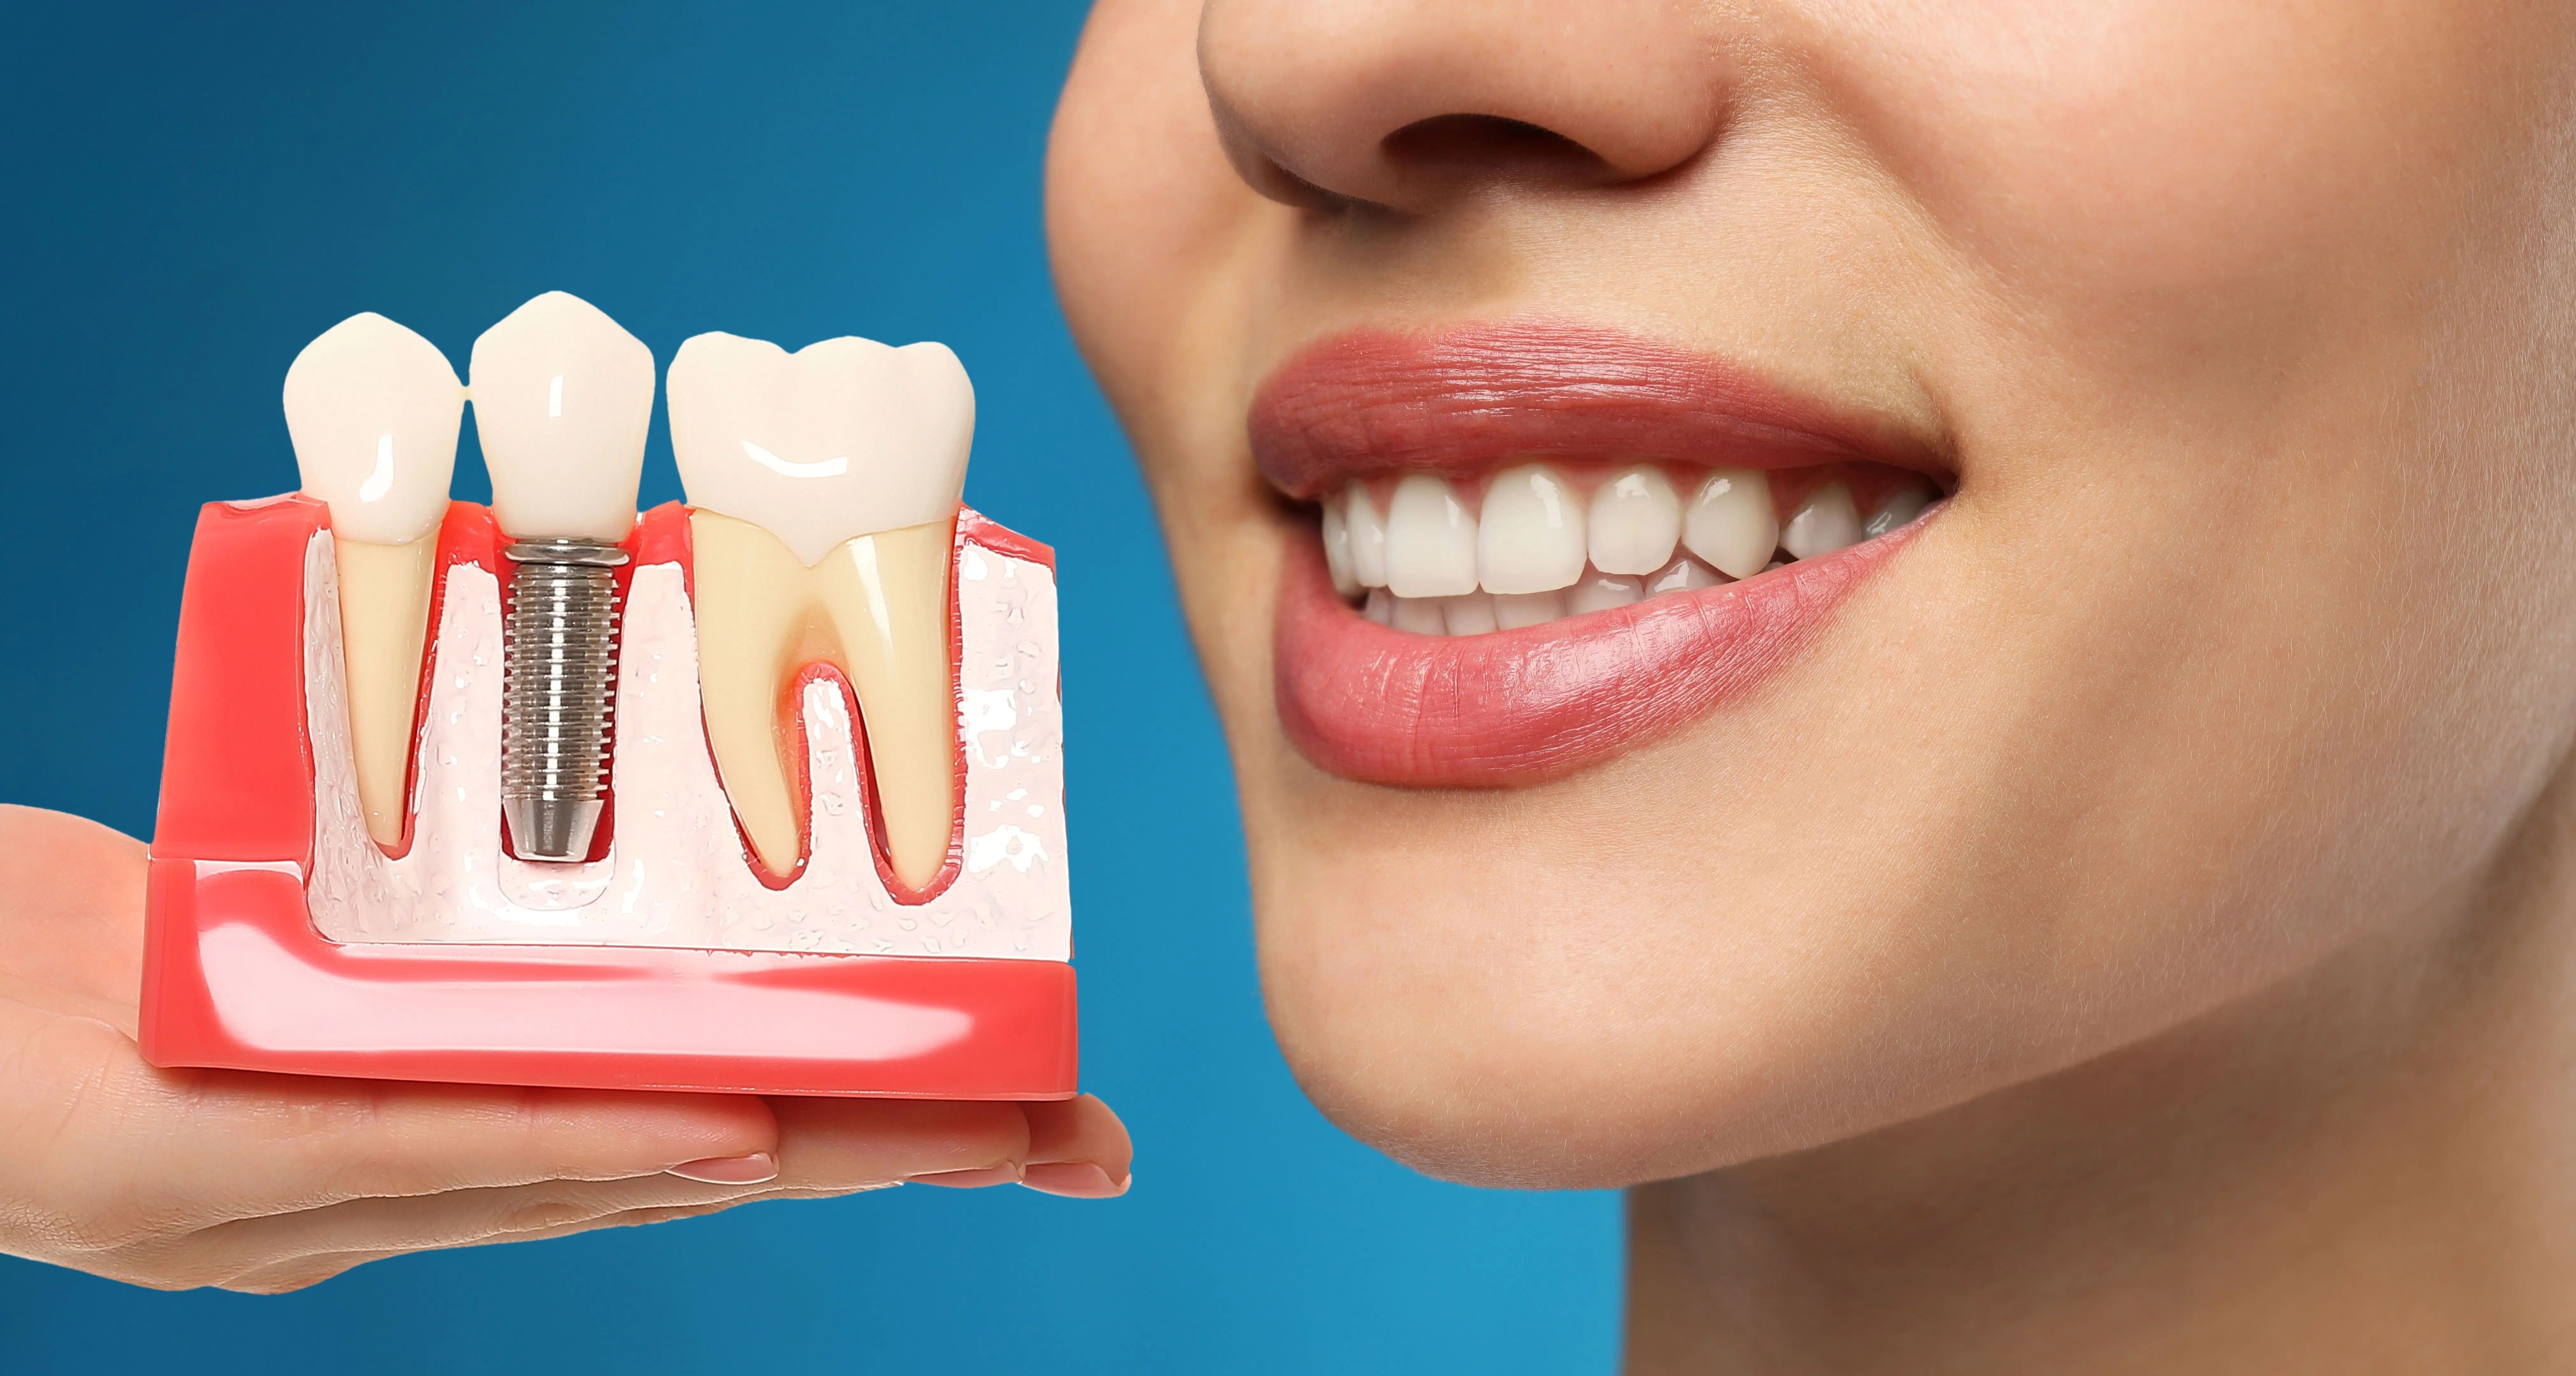 ما هي فترة زراعة الأسنان؟ ومن يحتاج لها؟